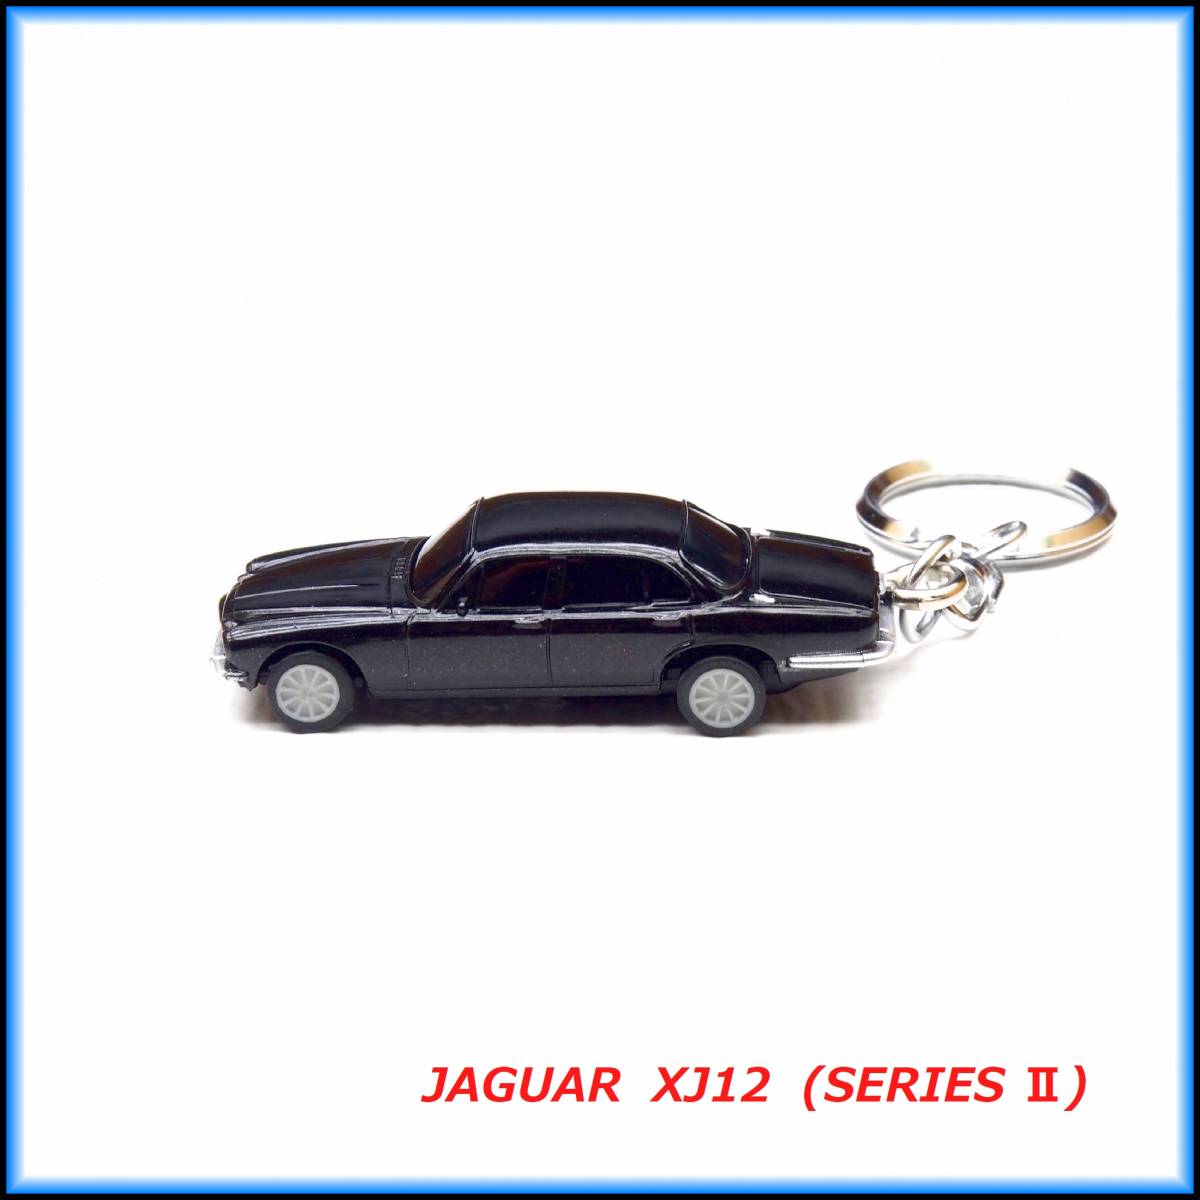  Jaguar XJ12 серии 2 миникар ремешок брелок для ключа muffler колесо бампер сиденье руль дополнительные передние фары u дренаж z